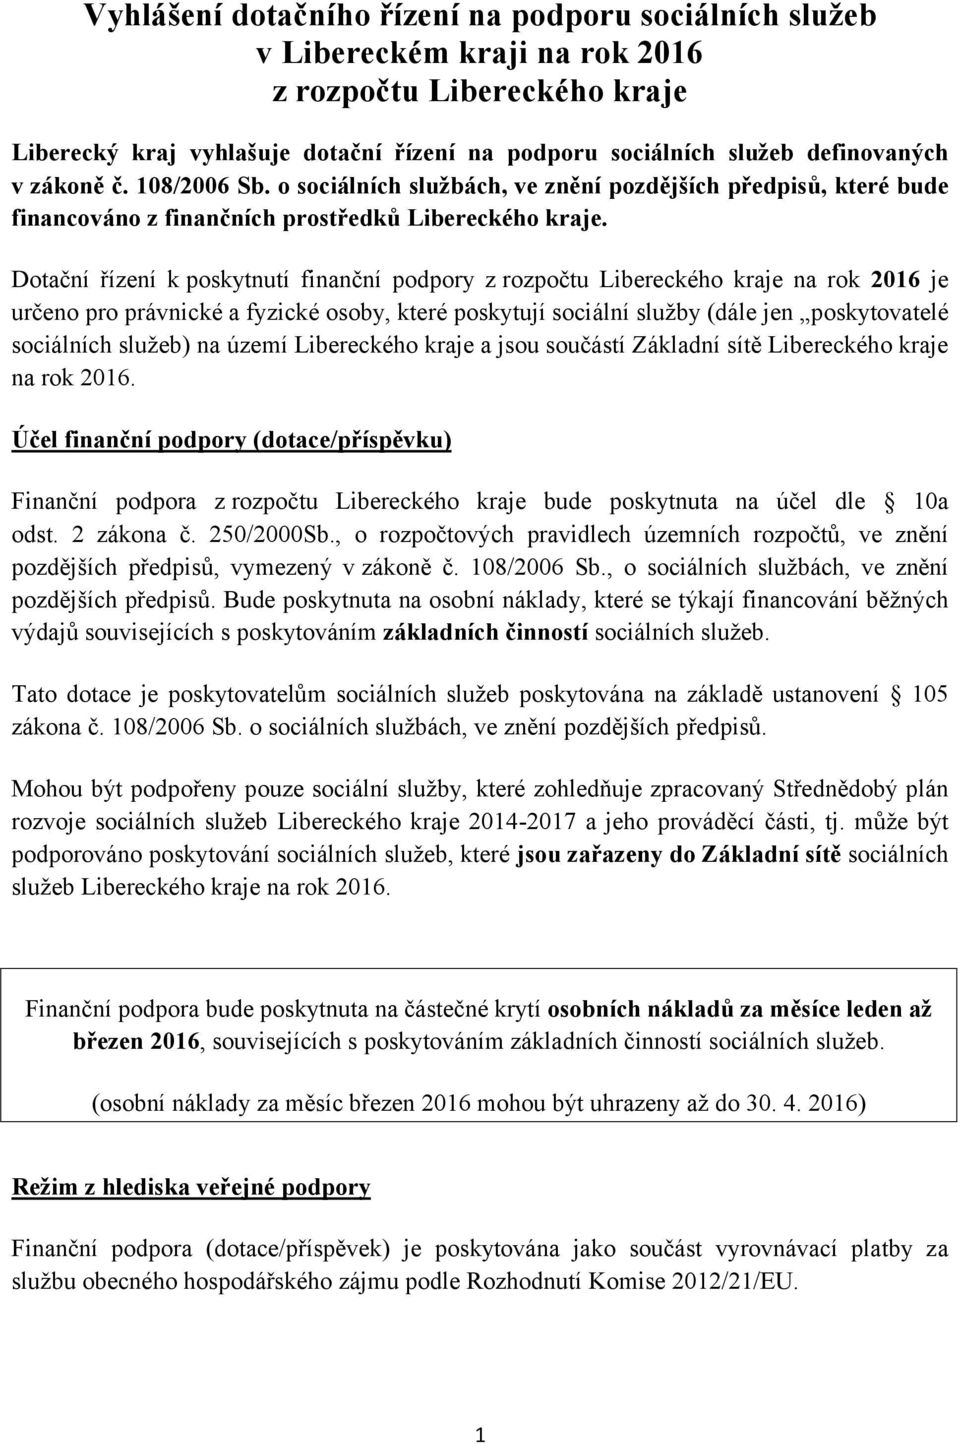 Dotační řízení k poskytnutí finanční podpory z rozpočtu Libereckého kraje na rok 2016 je určeno pro právnické a fyzické osoby, které poskytují sociální služby (dále jen poskytovatelé sociálních